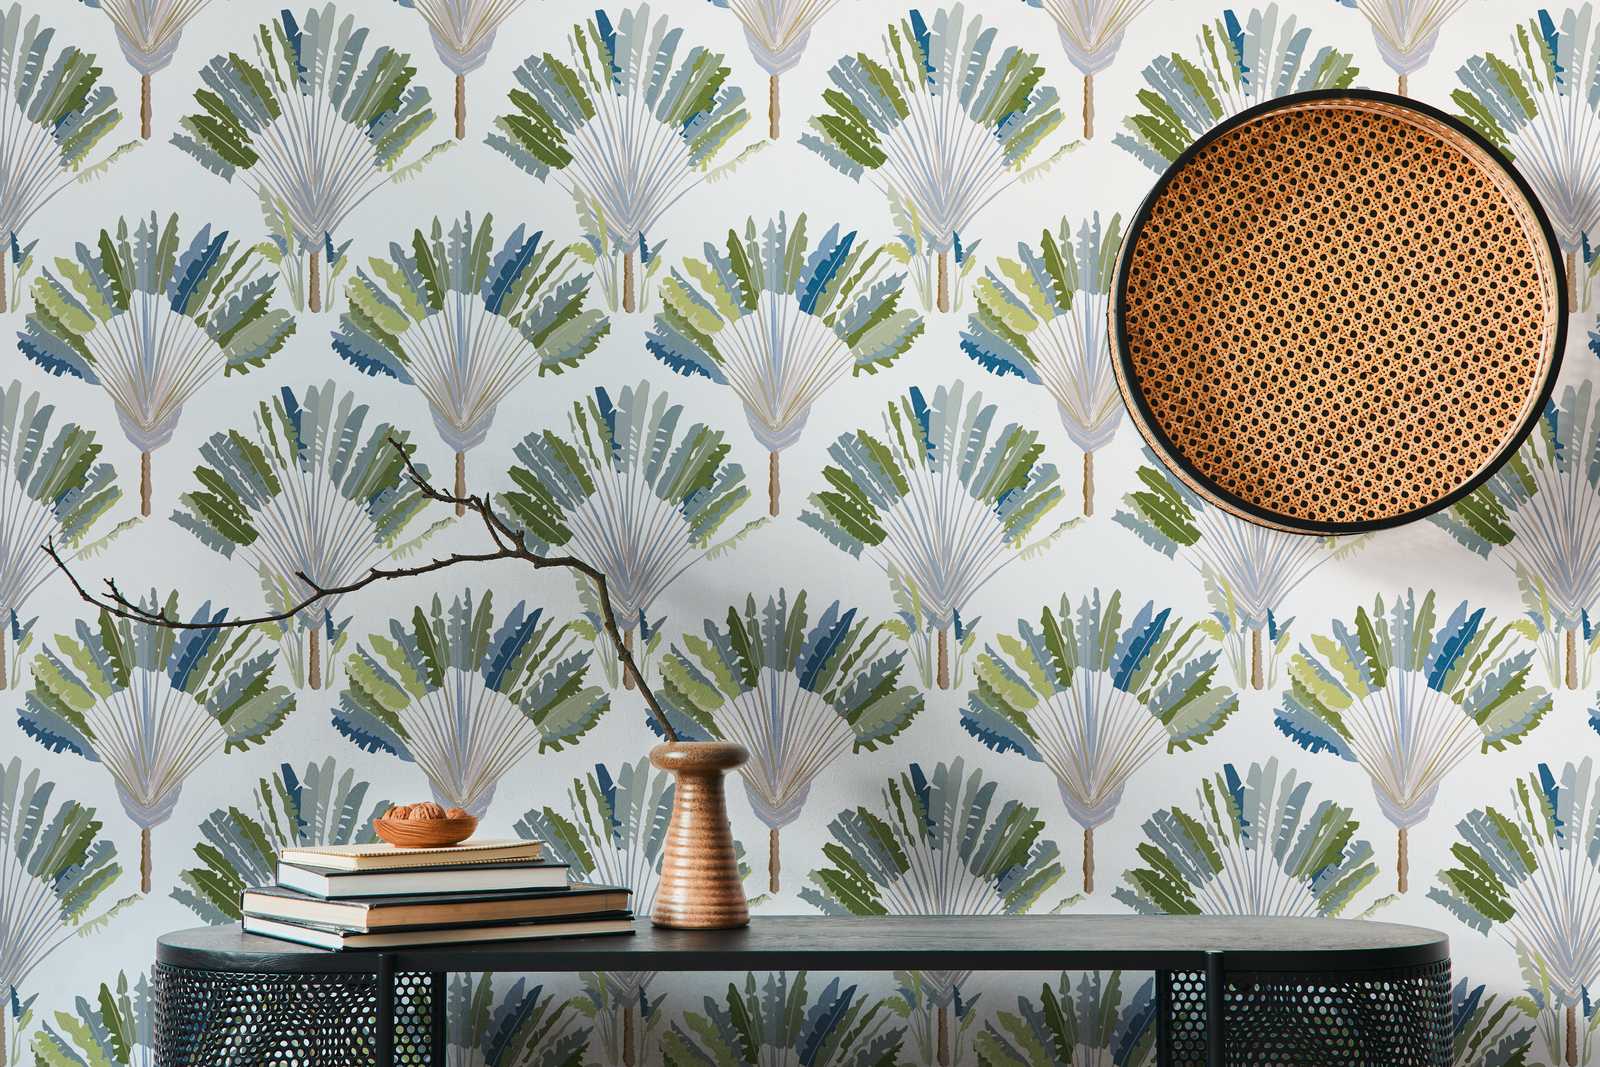             Tapete Palmenblätter & Stauden im abstrakten Muster – Grün, Weiß, Blau
        